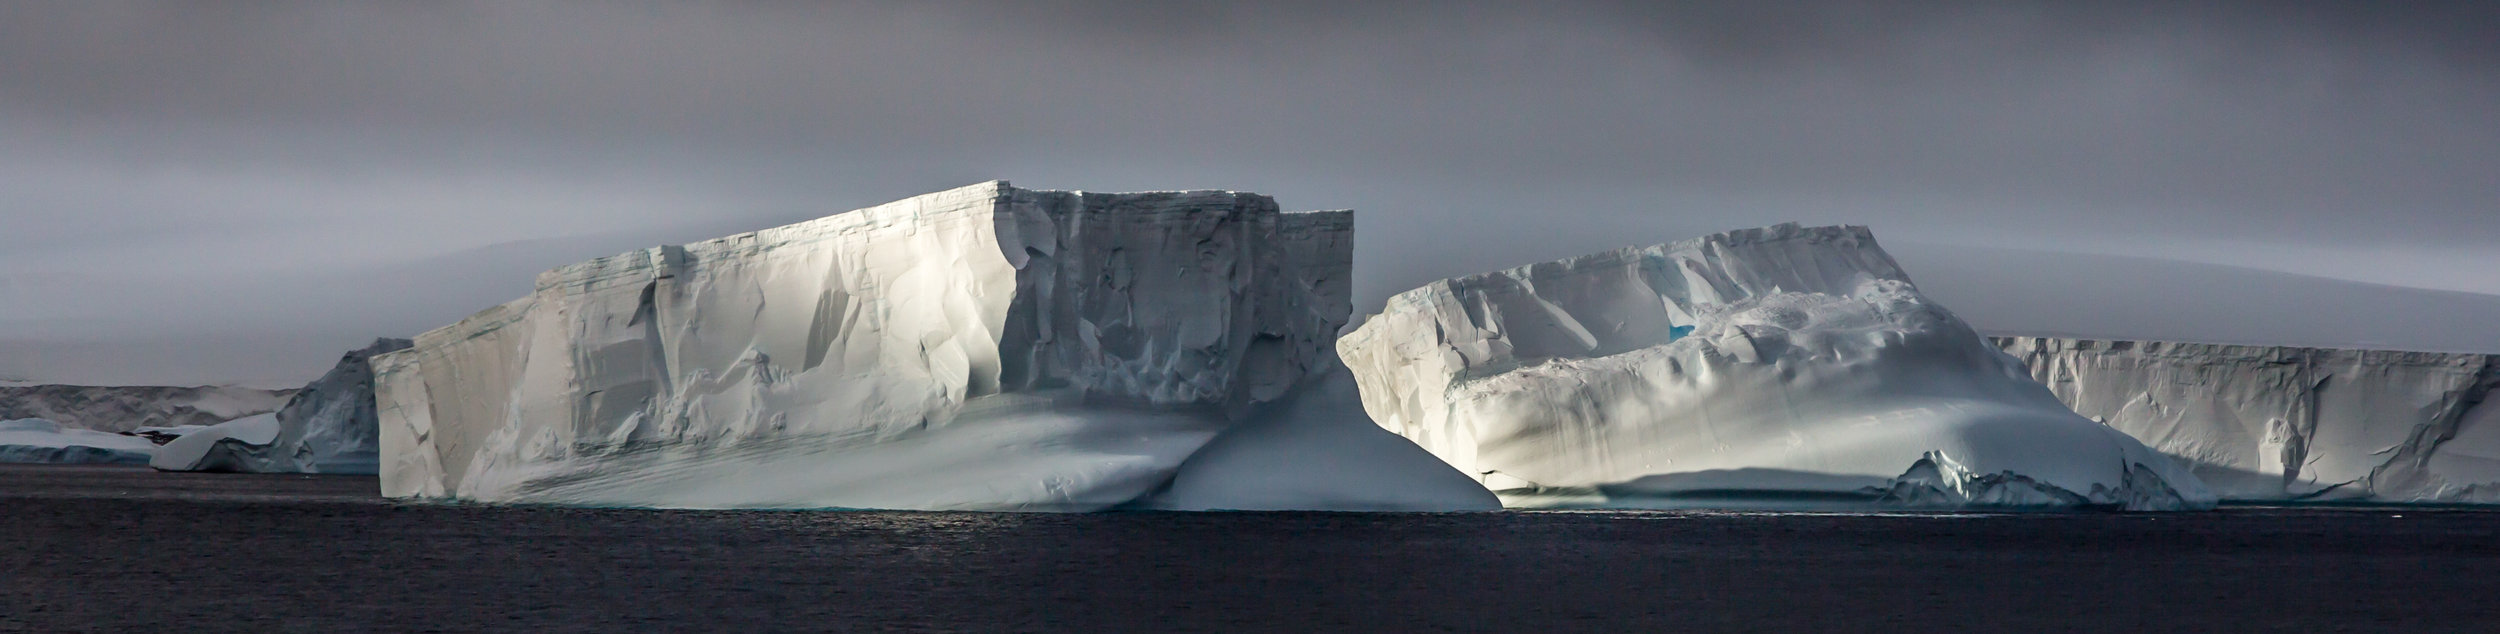 Top Antarctica Shots-78.jpg